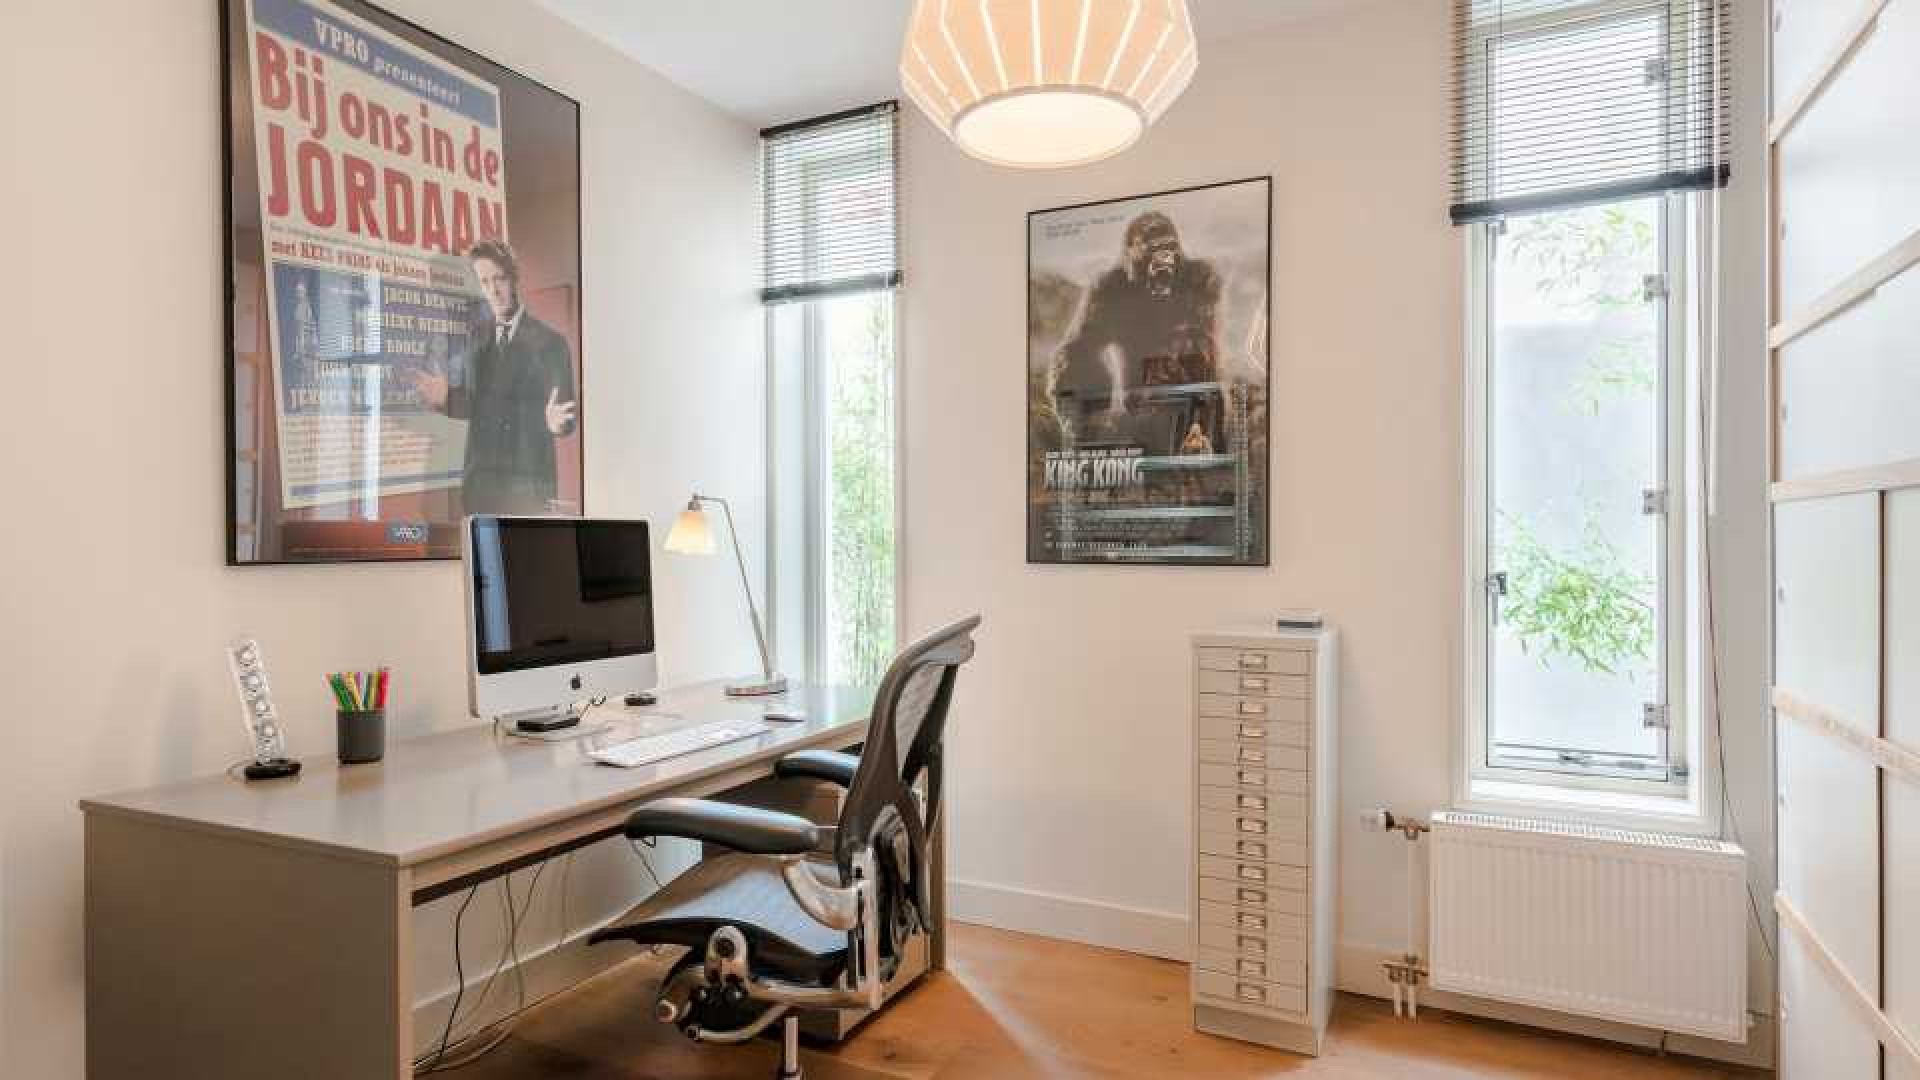 Ex Jiskefet acteur Kees Prins verkoopt zijn Amsterdamse huis met meer dan 1 miljoen euro winst! Zie foto's